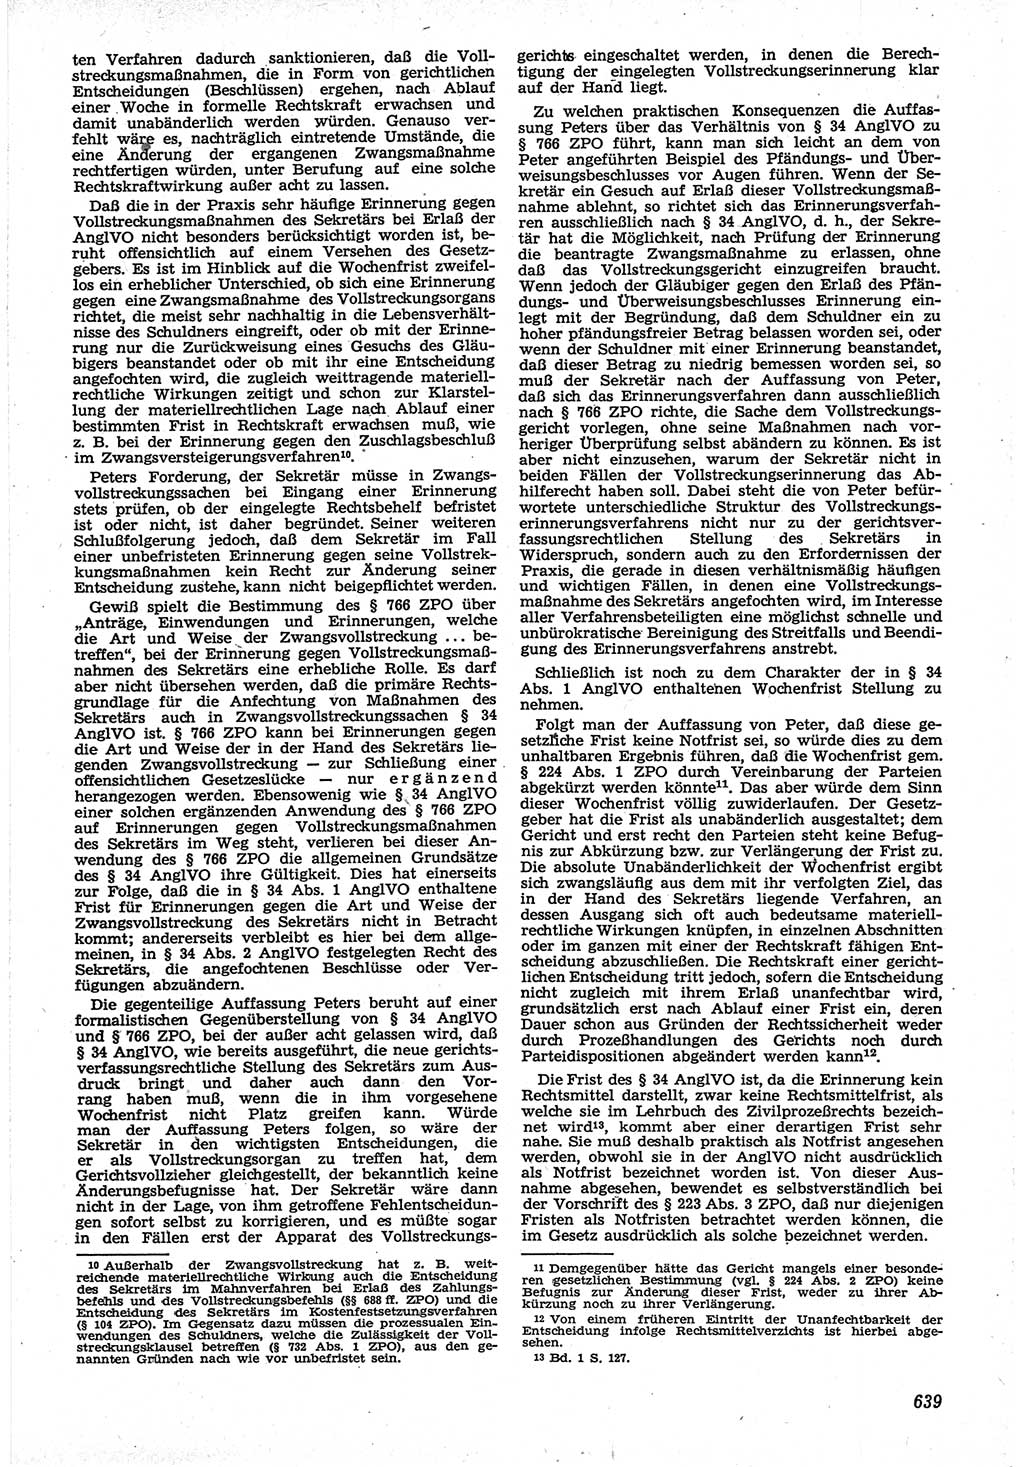 Neue Justiz (NJ), Zeitschrift für Recht und Rechtswissenschaft [Deutsche Demokratische Republik (DDR)], 12. Jahrgang 1958, Seite 639 (NJ DDR 1958, S. 639)